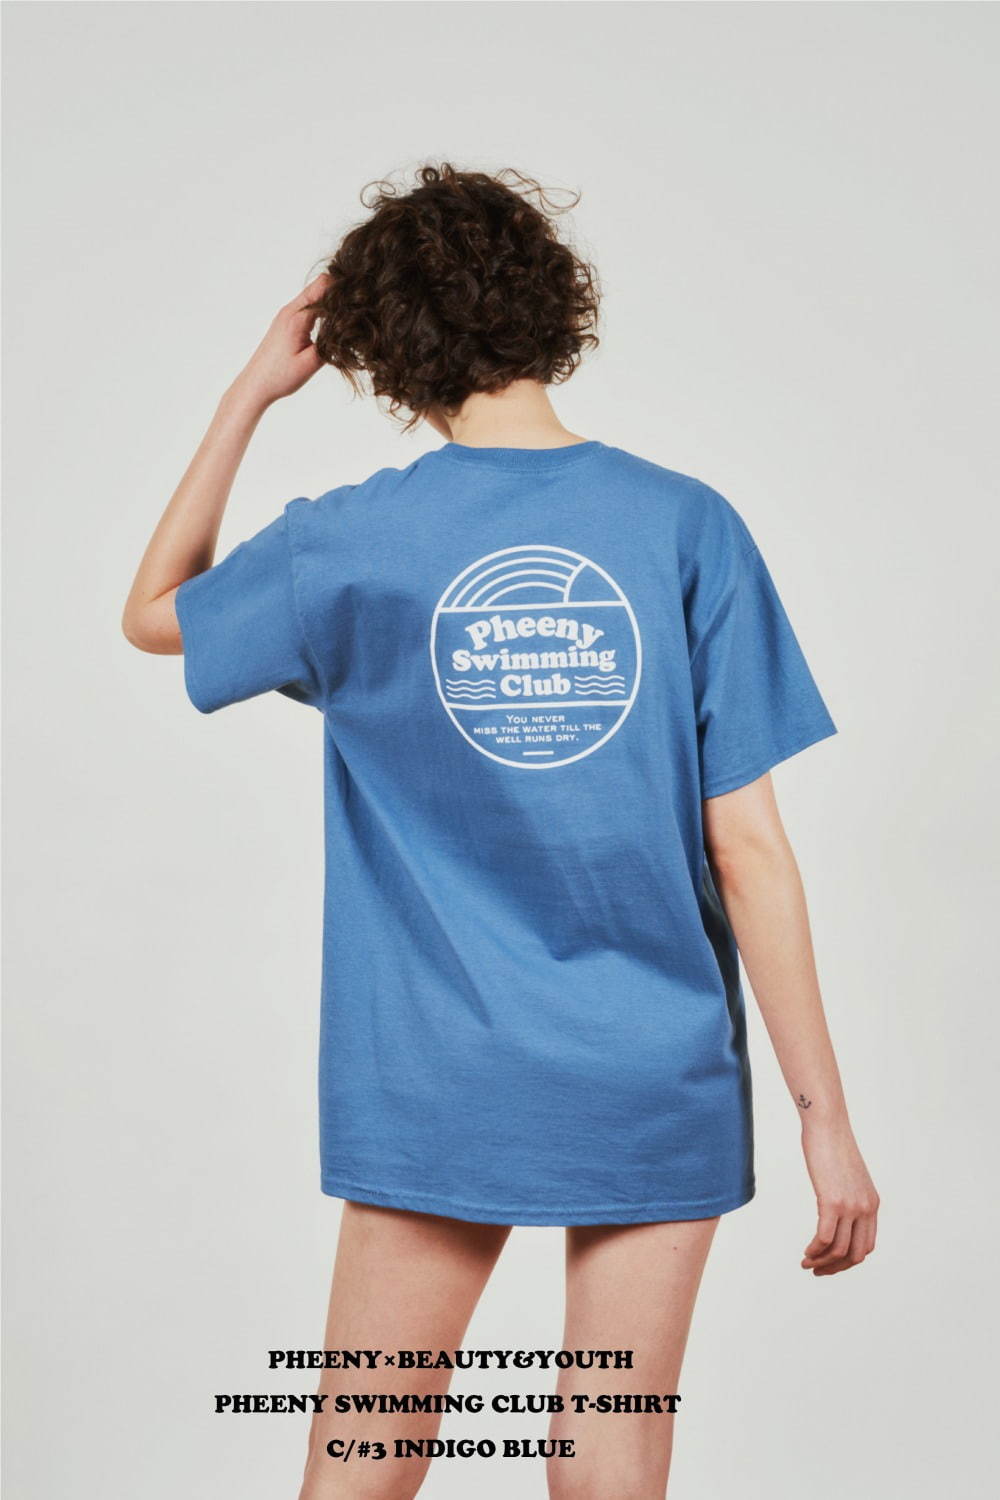 フィーニー初のスイムウェア、街中でも着られるキャミソールなど - スイミングクラブ着想のTシャツも コピー